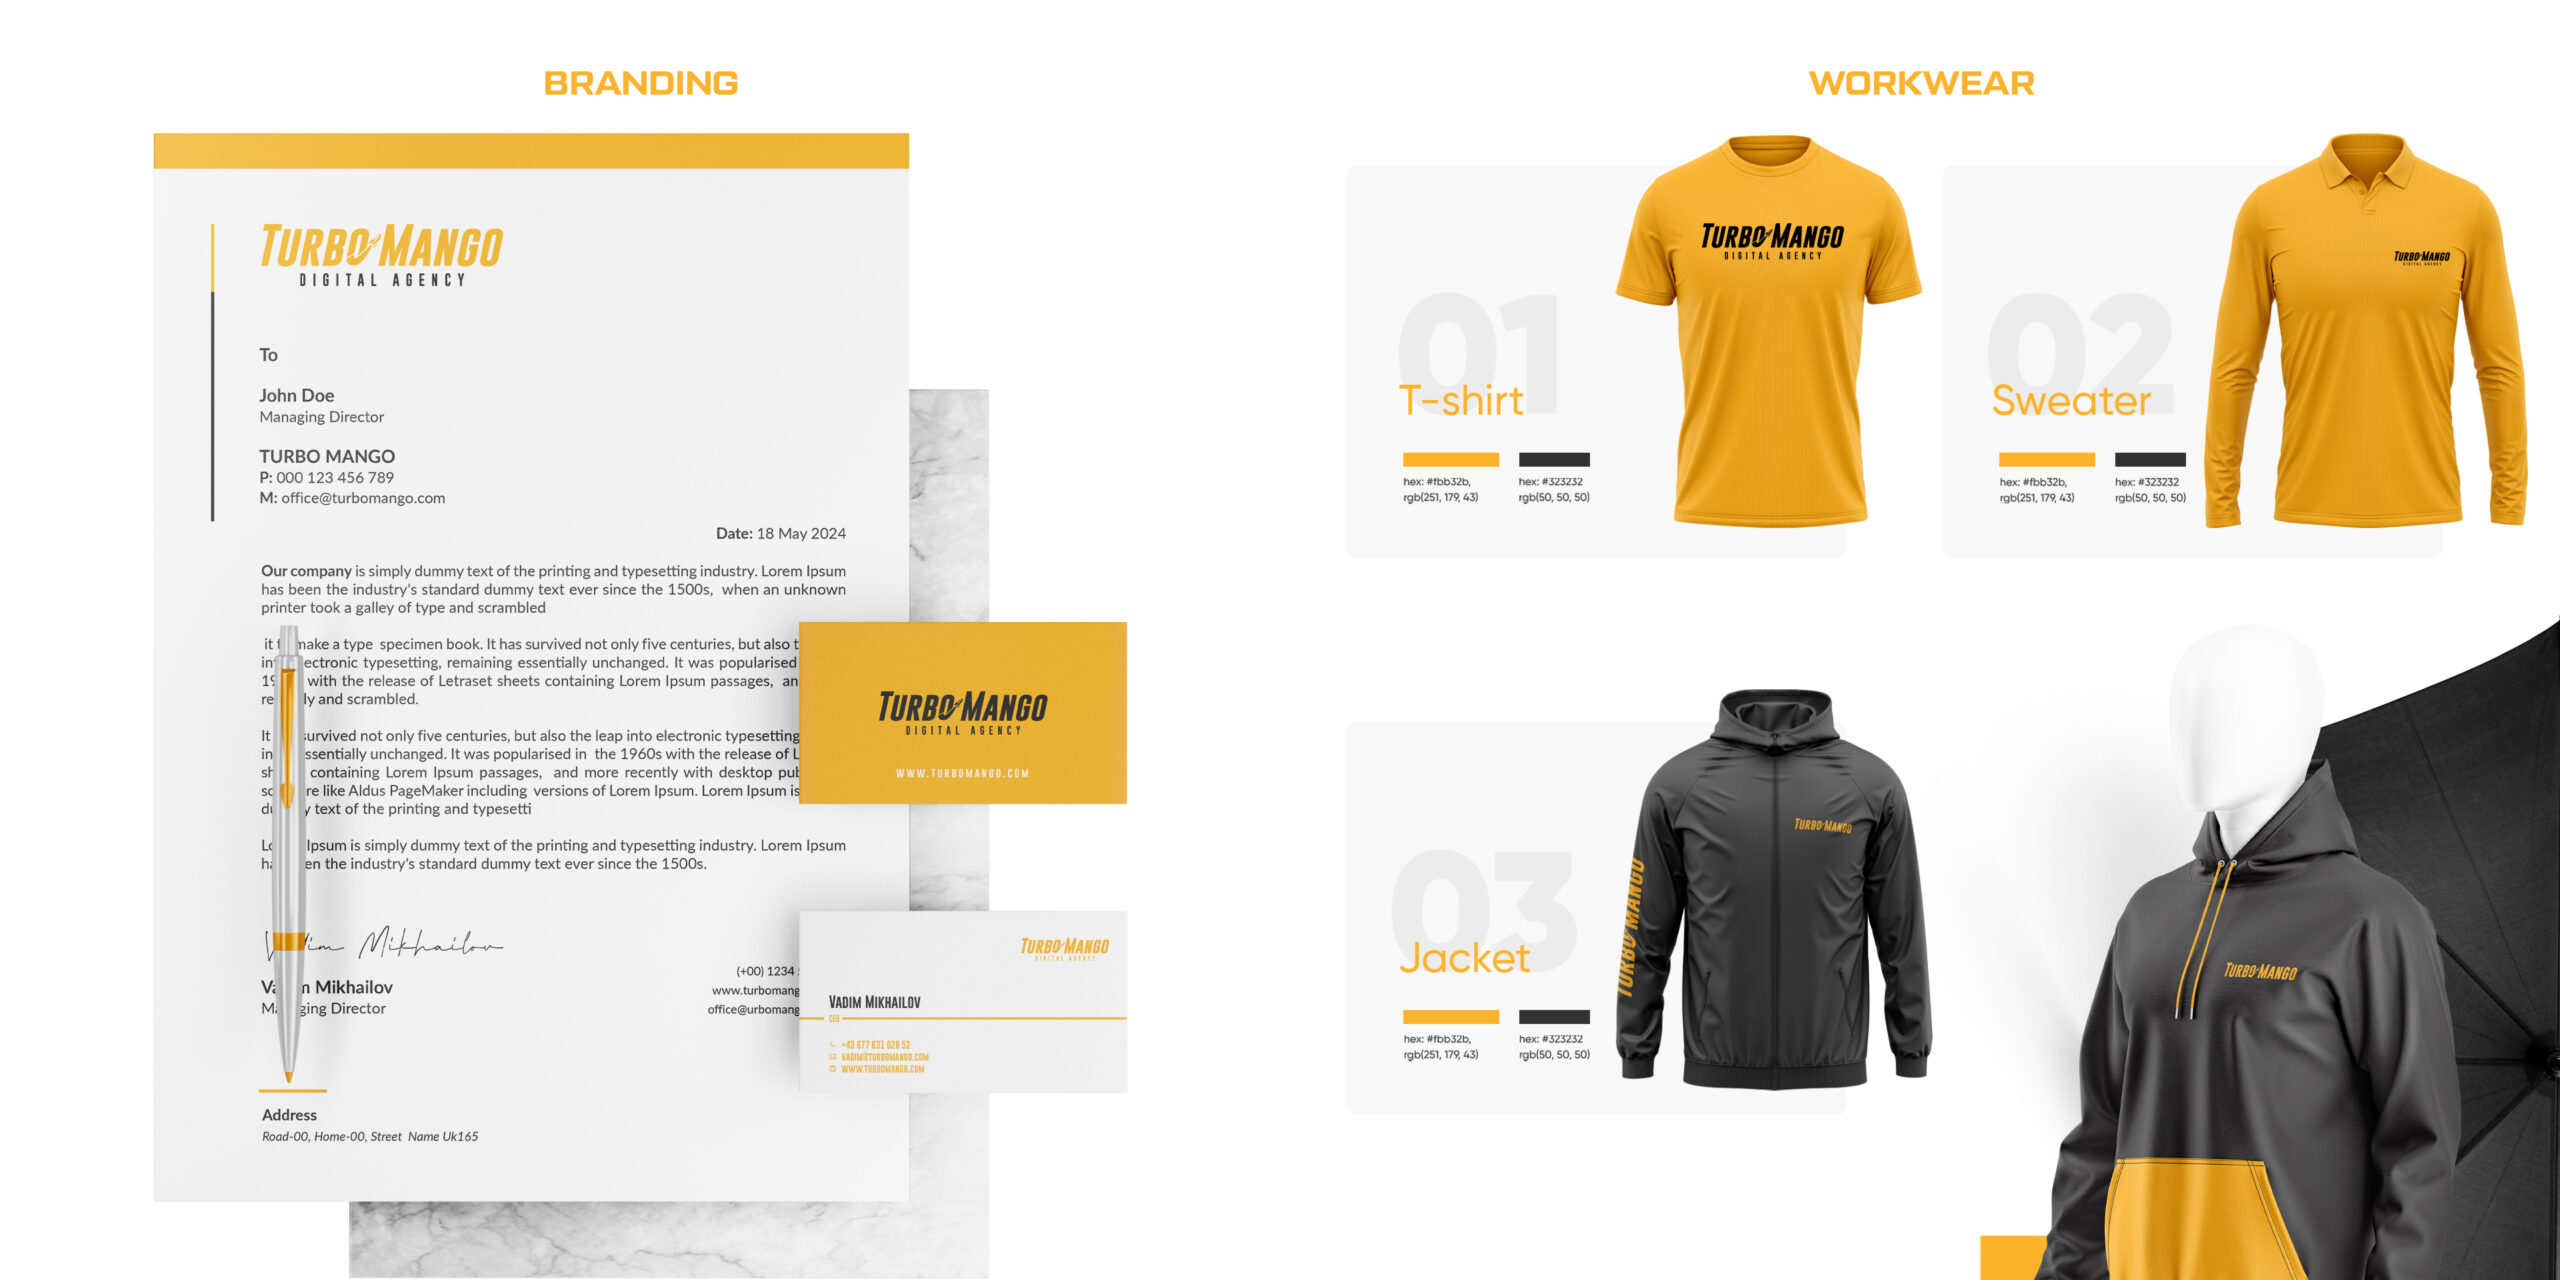 TurboMango Digital Agency Branding inklusive Briefkopf, Visitenkarte, Kugelschreiber und gebrandete Arbeitskleidung wie T-Shirt, Pullover und Jacke.